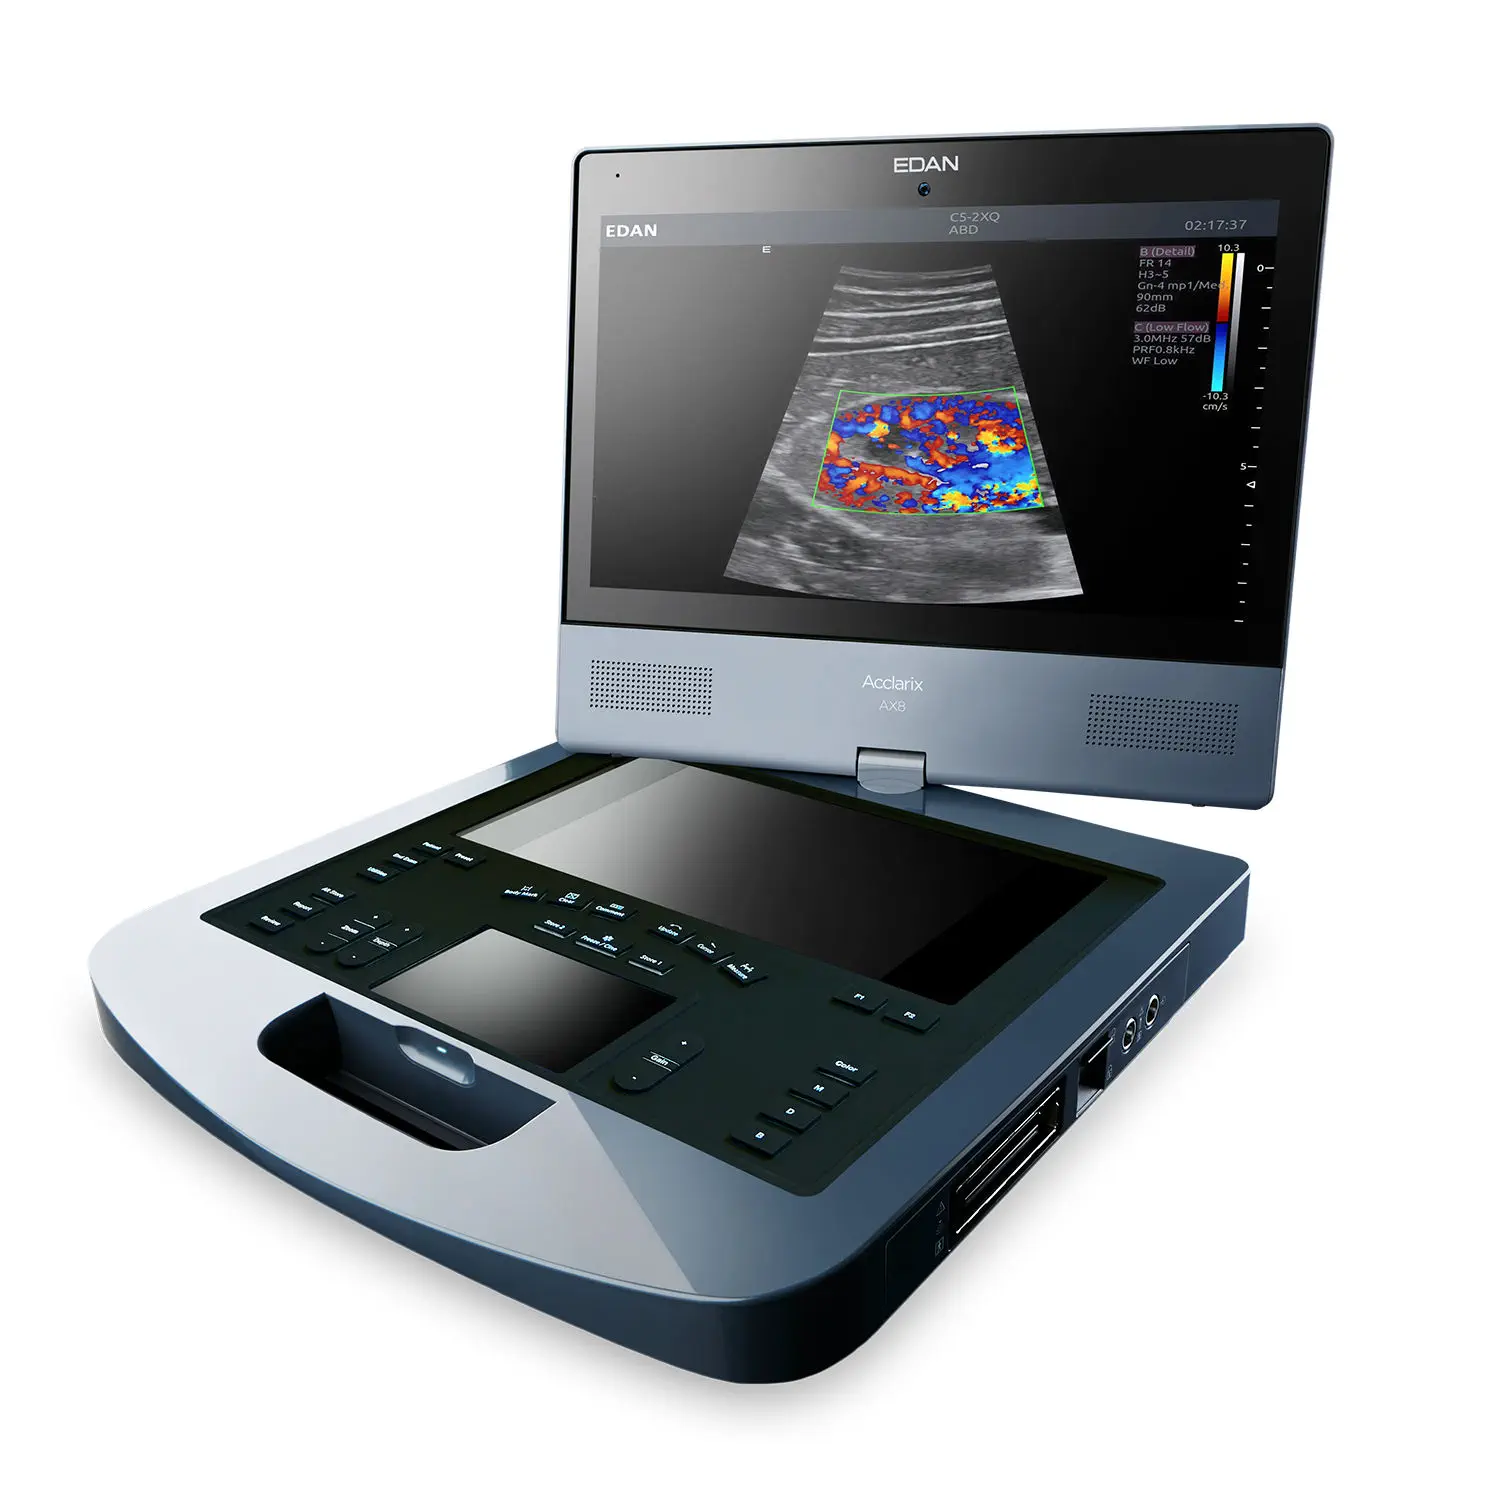 เครื่องตรวจอวัยวะภายในด้วยคลื่นเสียงความคมชัดสูงแบบพกพา  Portable ultrasound system Edan Acclarix AX8  Avante